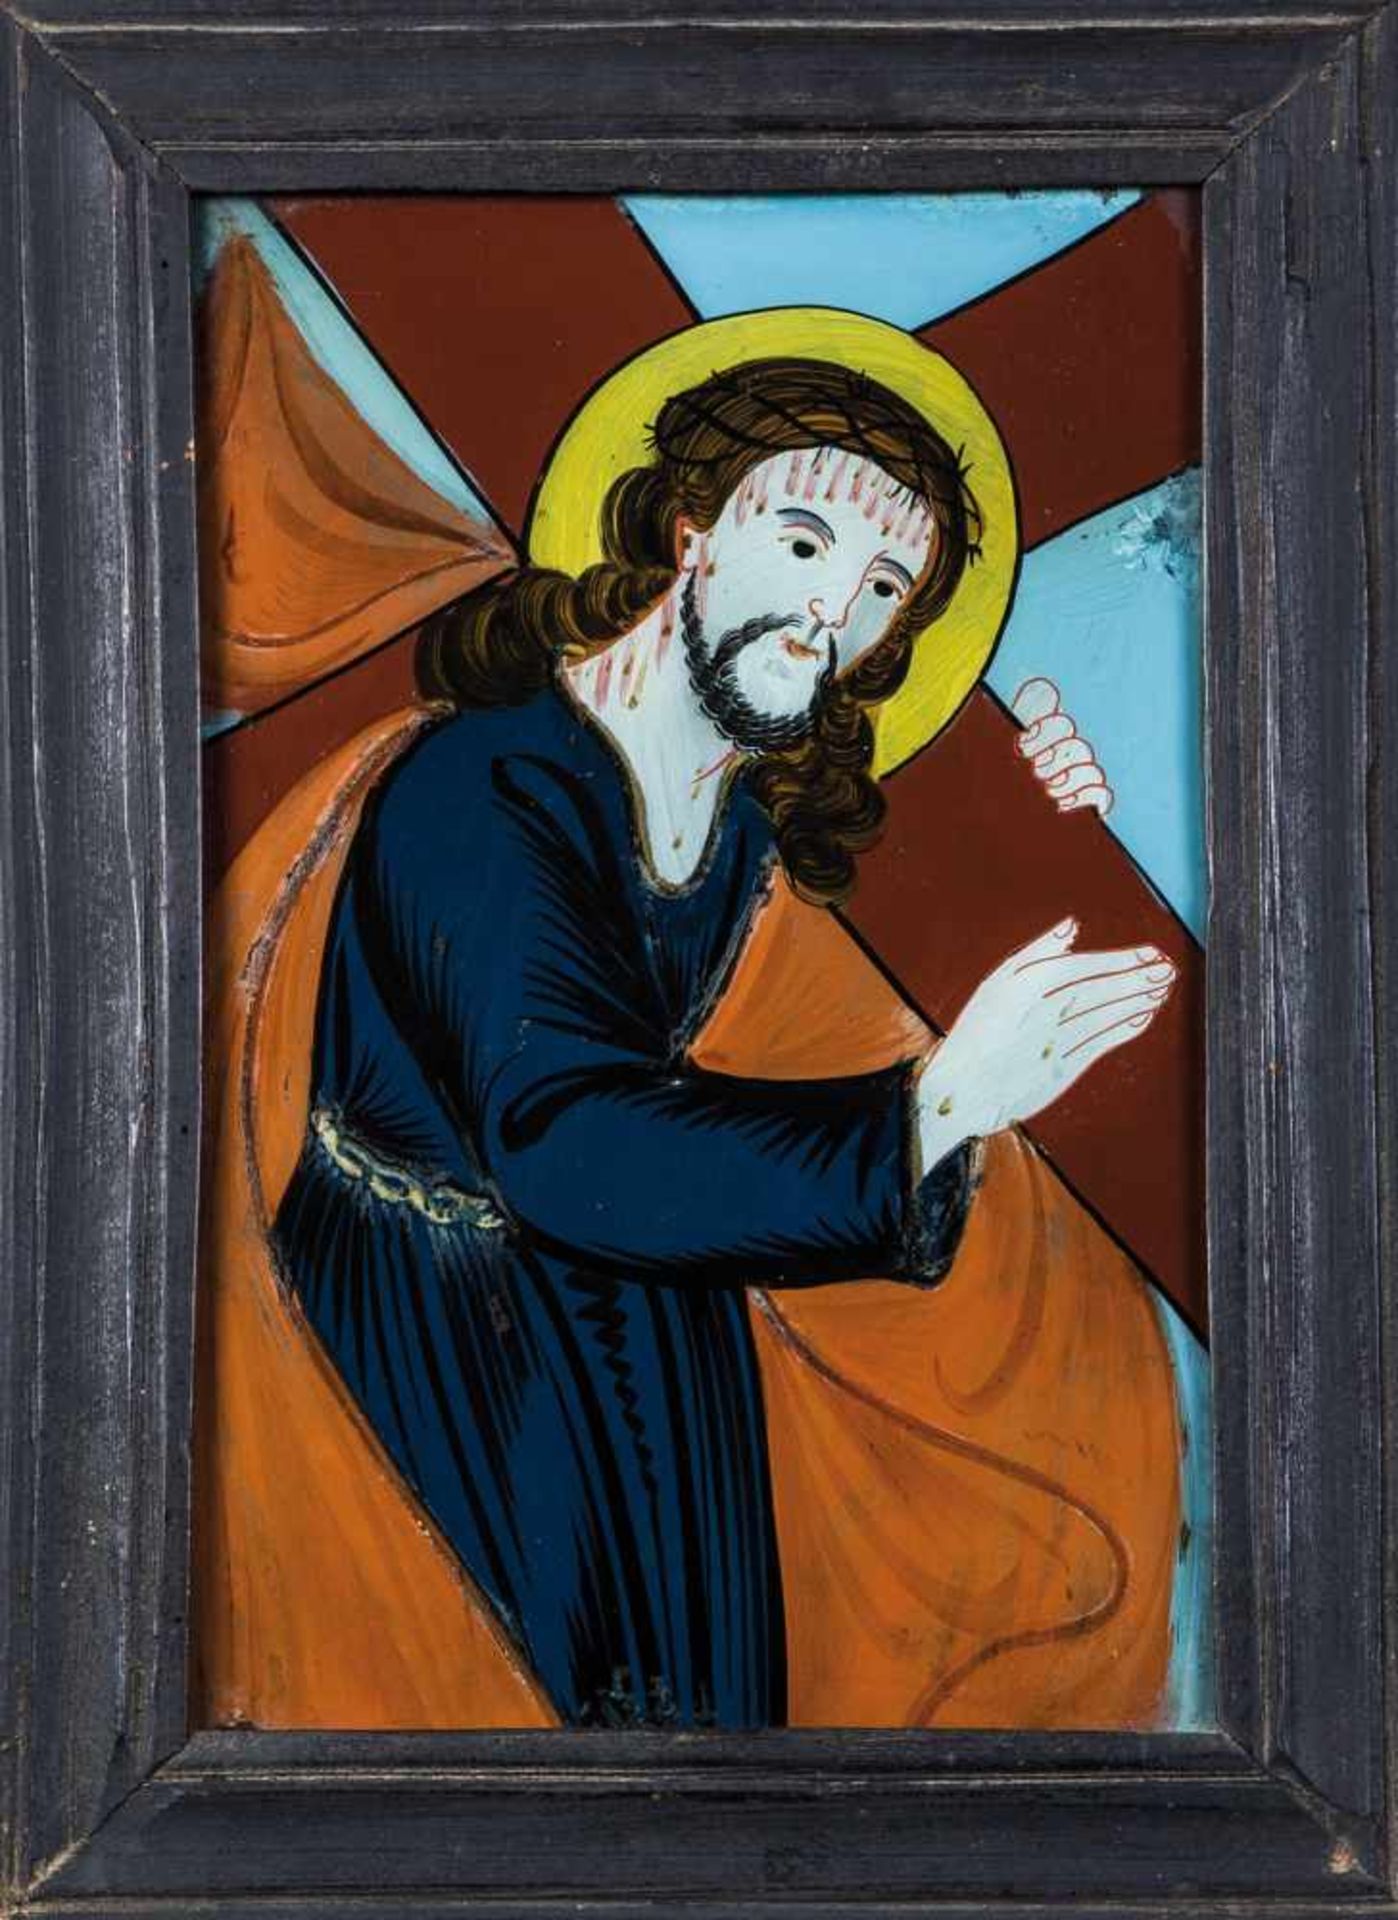 Hinterglasbild mit dem das Kreuz tragenden JesusSandl, 2. Drittel 19. Jh. Sog. Kreuzschlepper. In